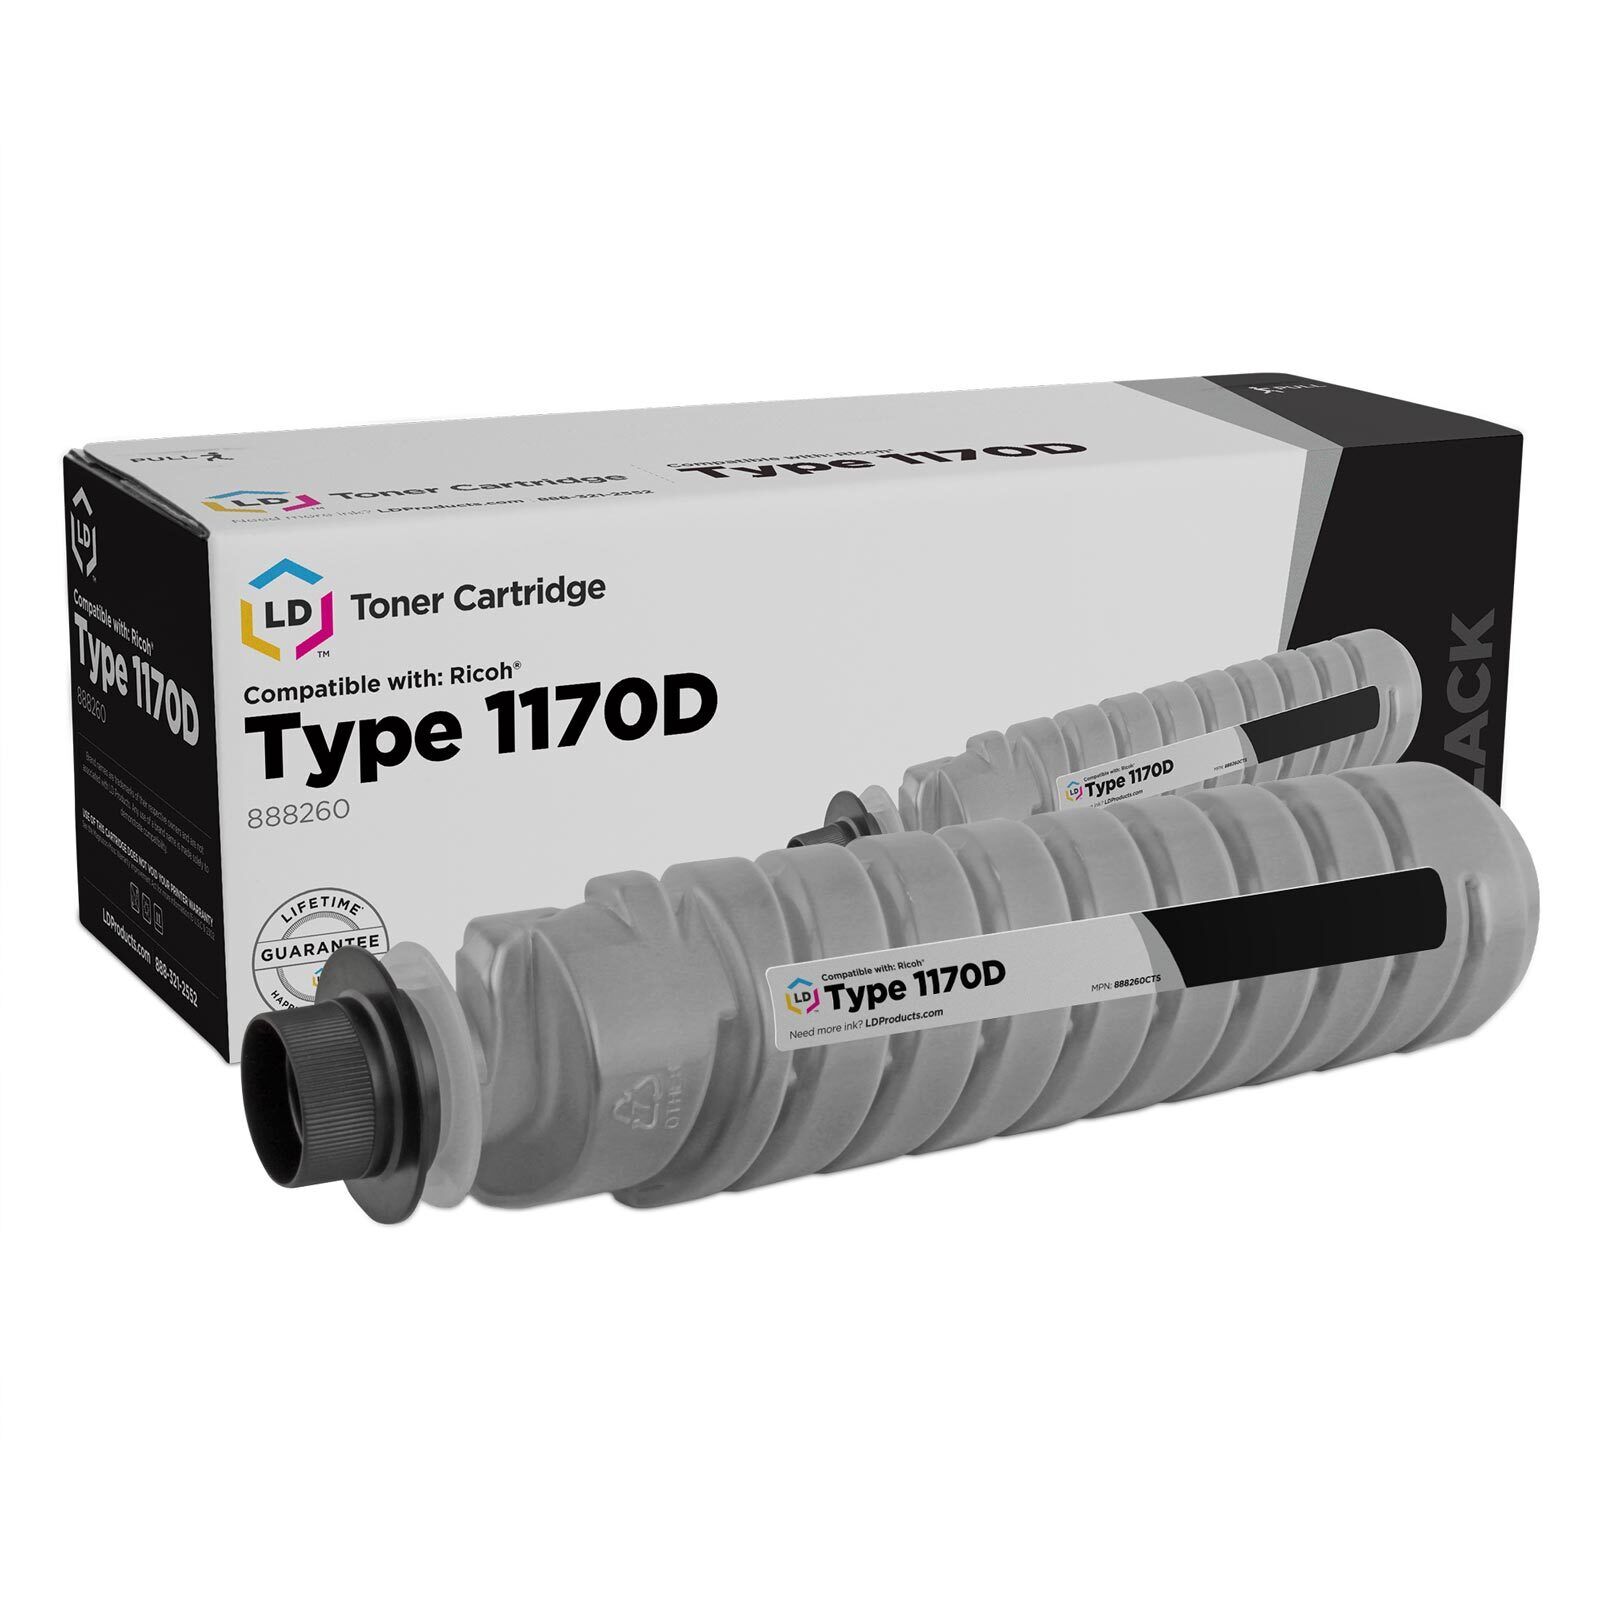 LD Compatible Ricoh 888260 / Type 1170D Black Laser Toner Cartridge